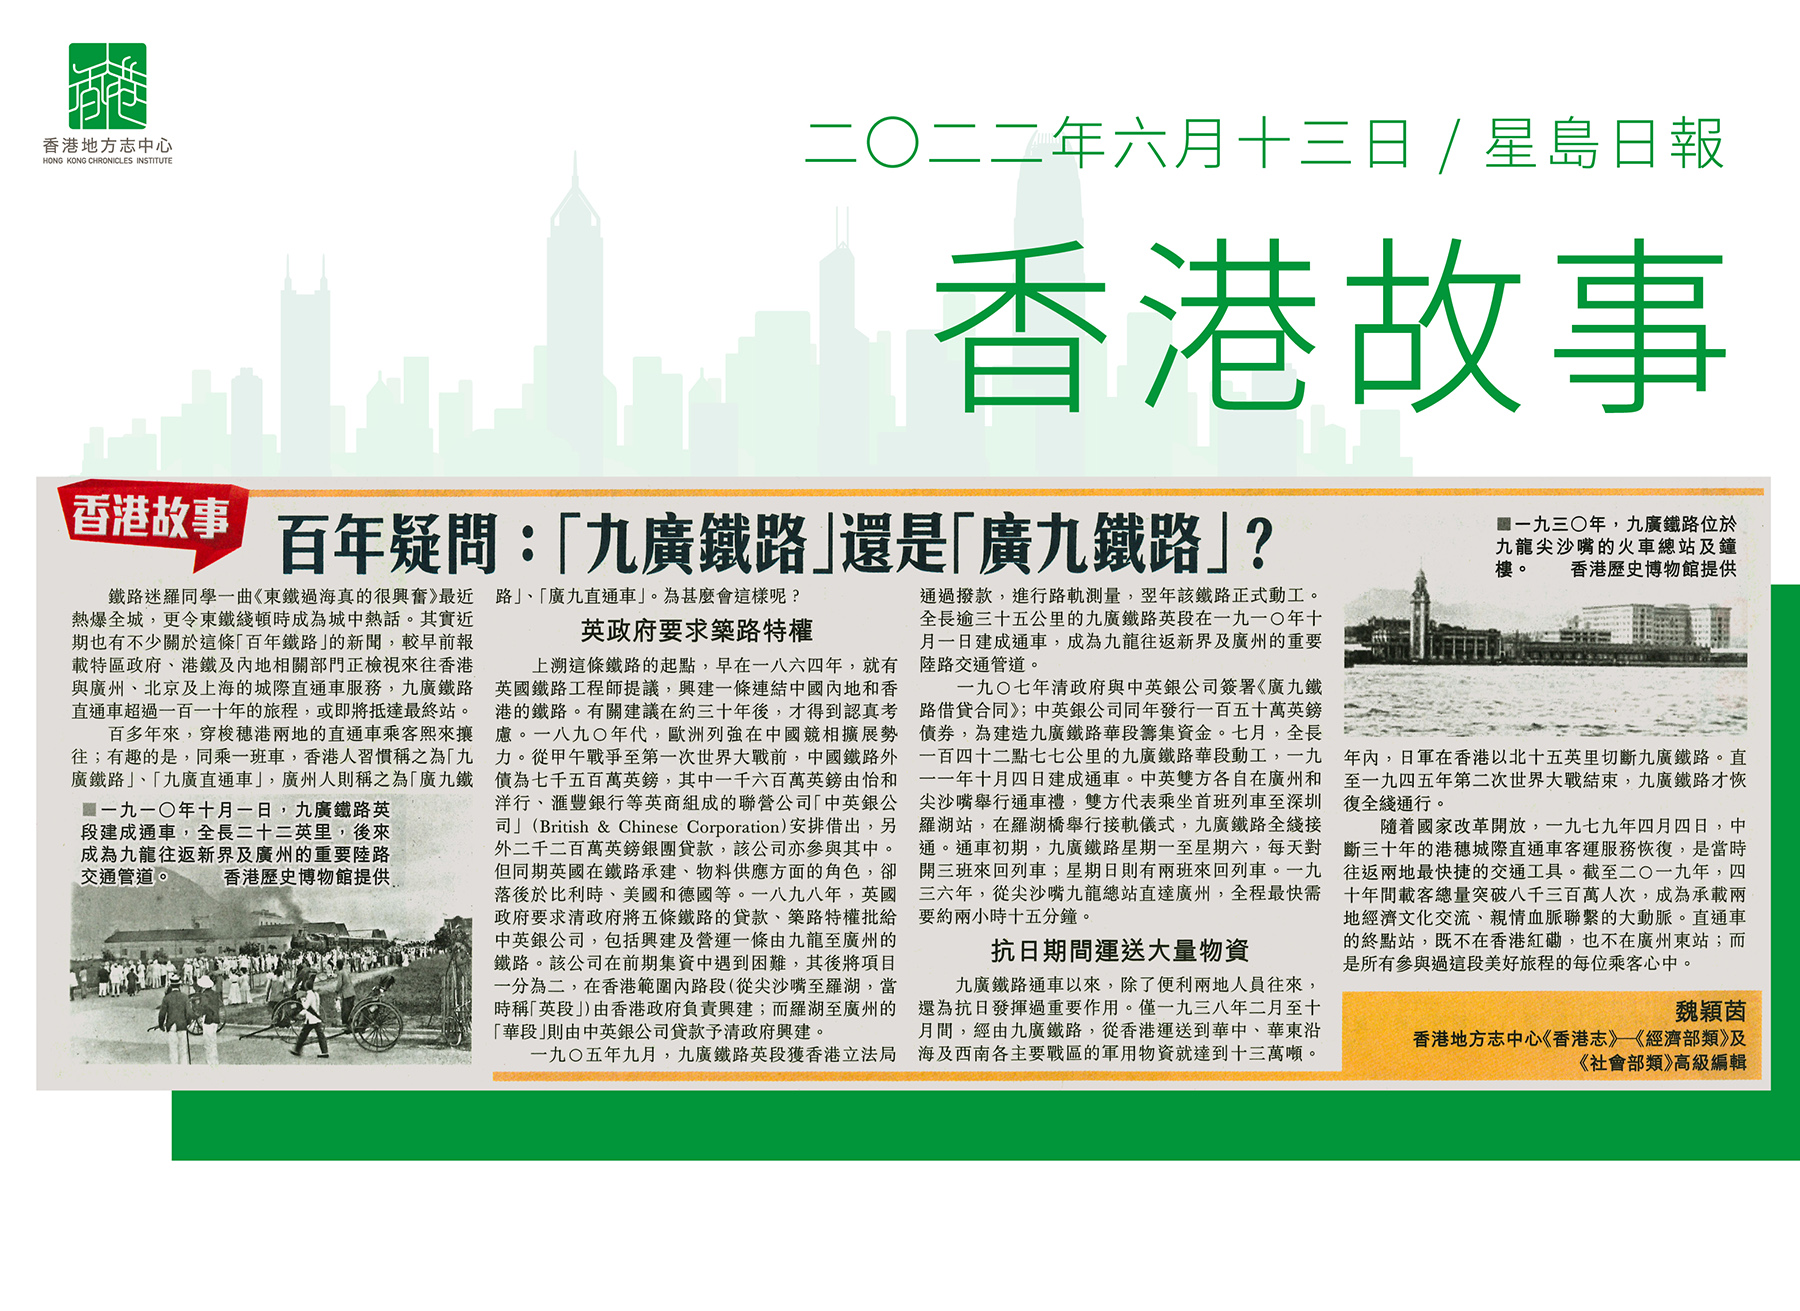 《香港志．經濟部類》及《香港志．社會部類》高級編輯 魏穎茵:《百年疑問：「九廣鐵路」還是「廣九鐵路」？》